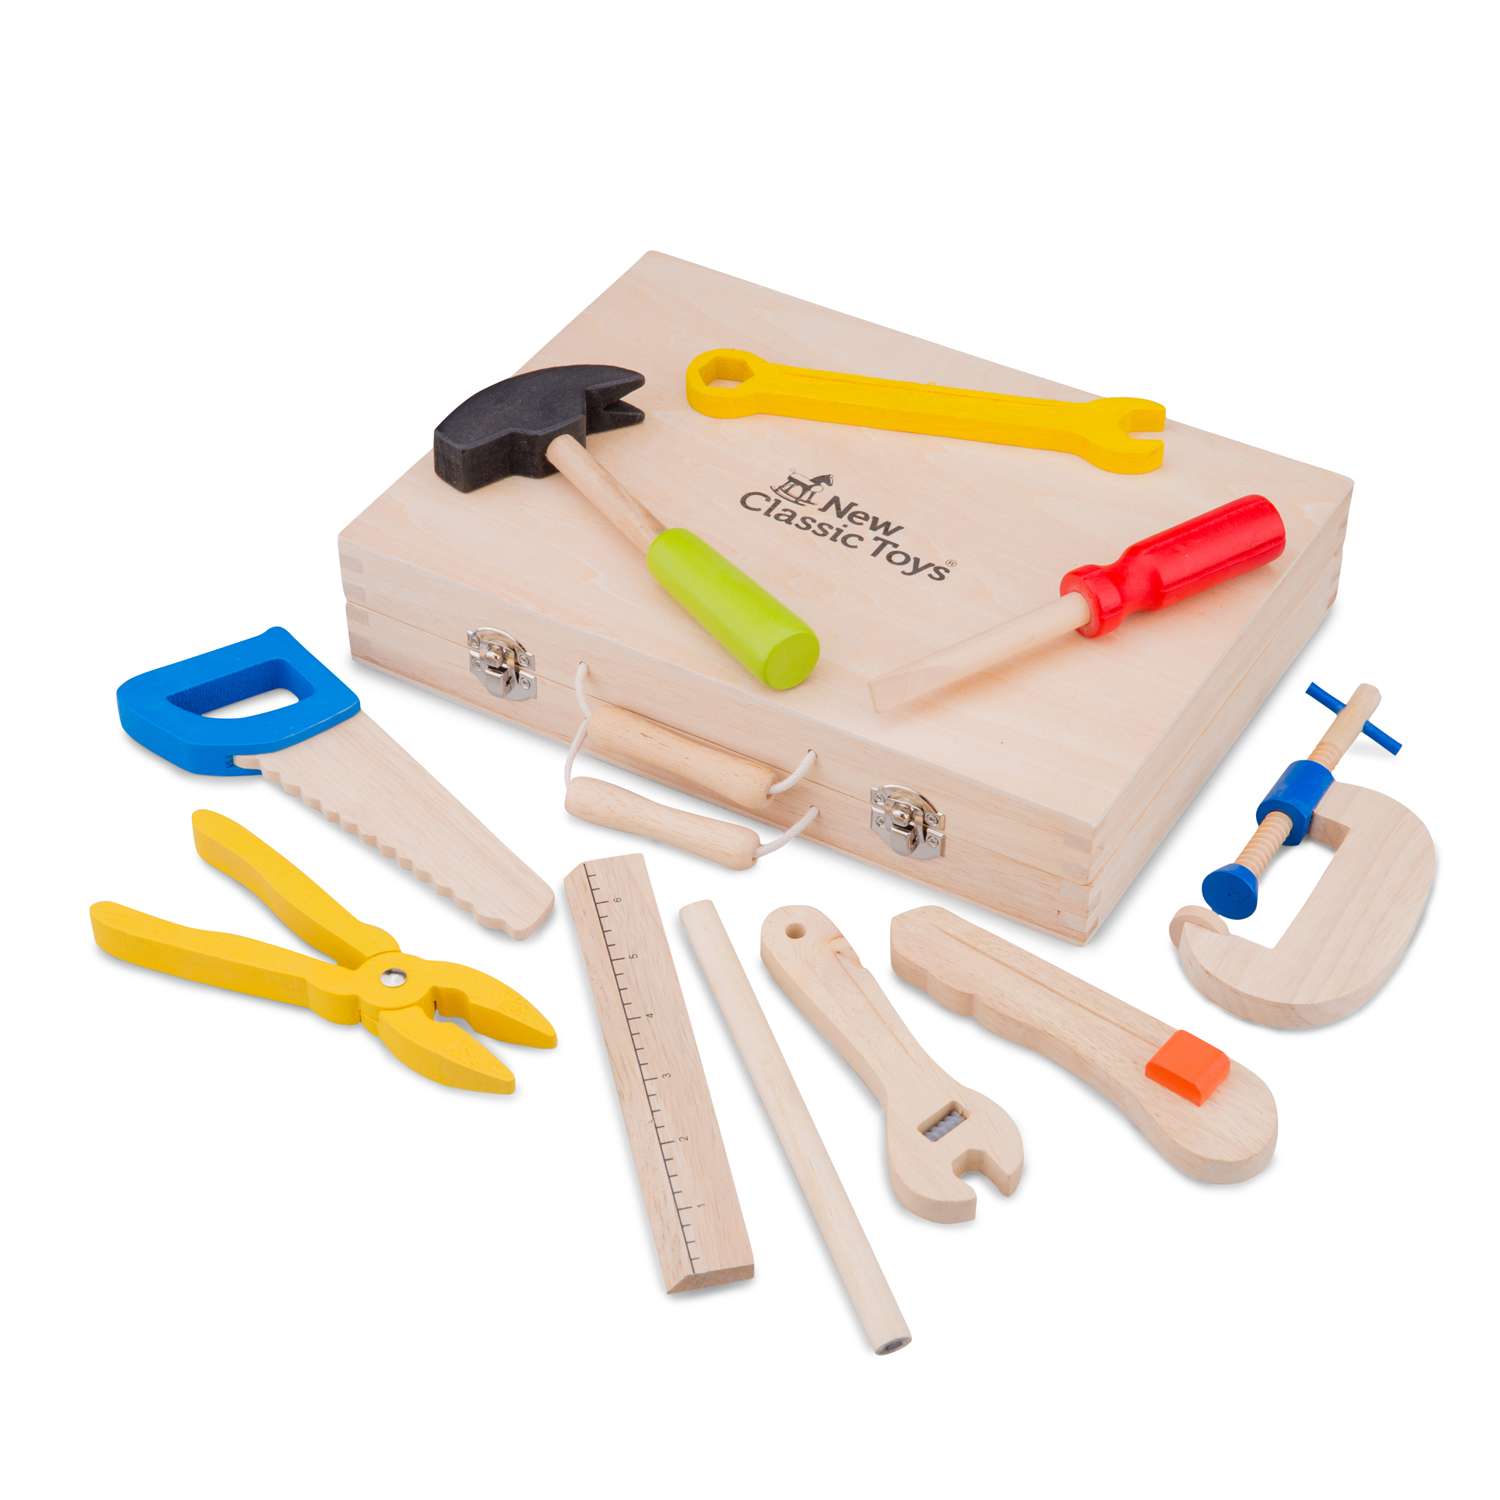 Игровой набор New Classic Toys инструменты 10 предметов 18280 - фото 2